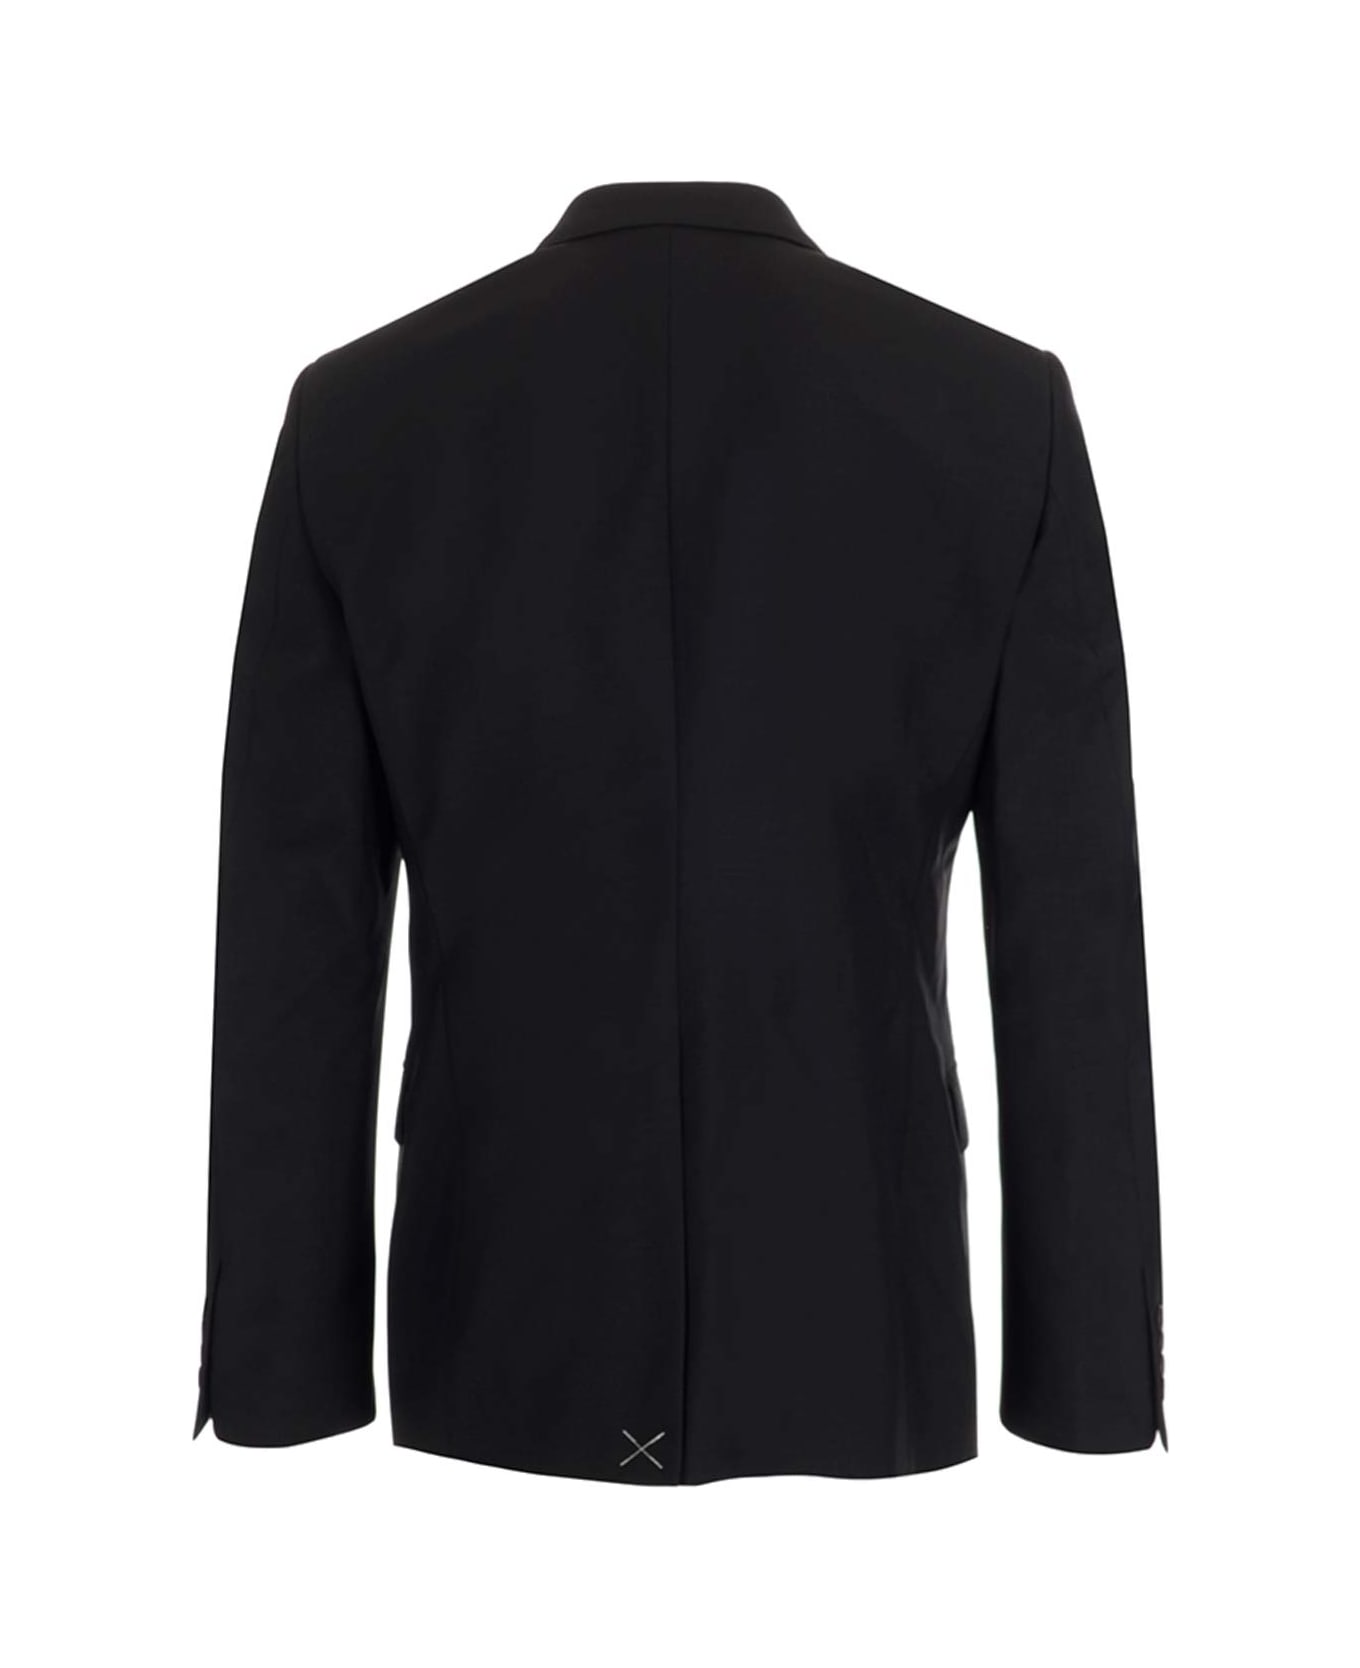 Alexander McQueen Black Wool Single-breasted Jacket - black